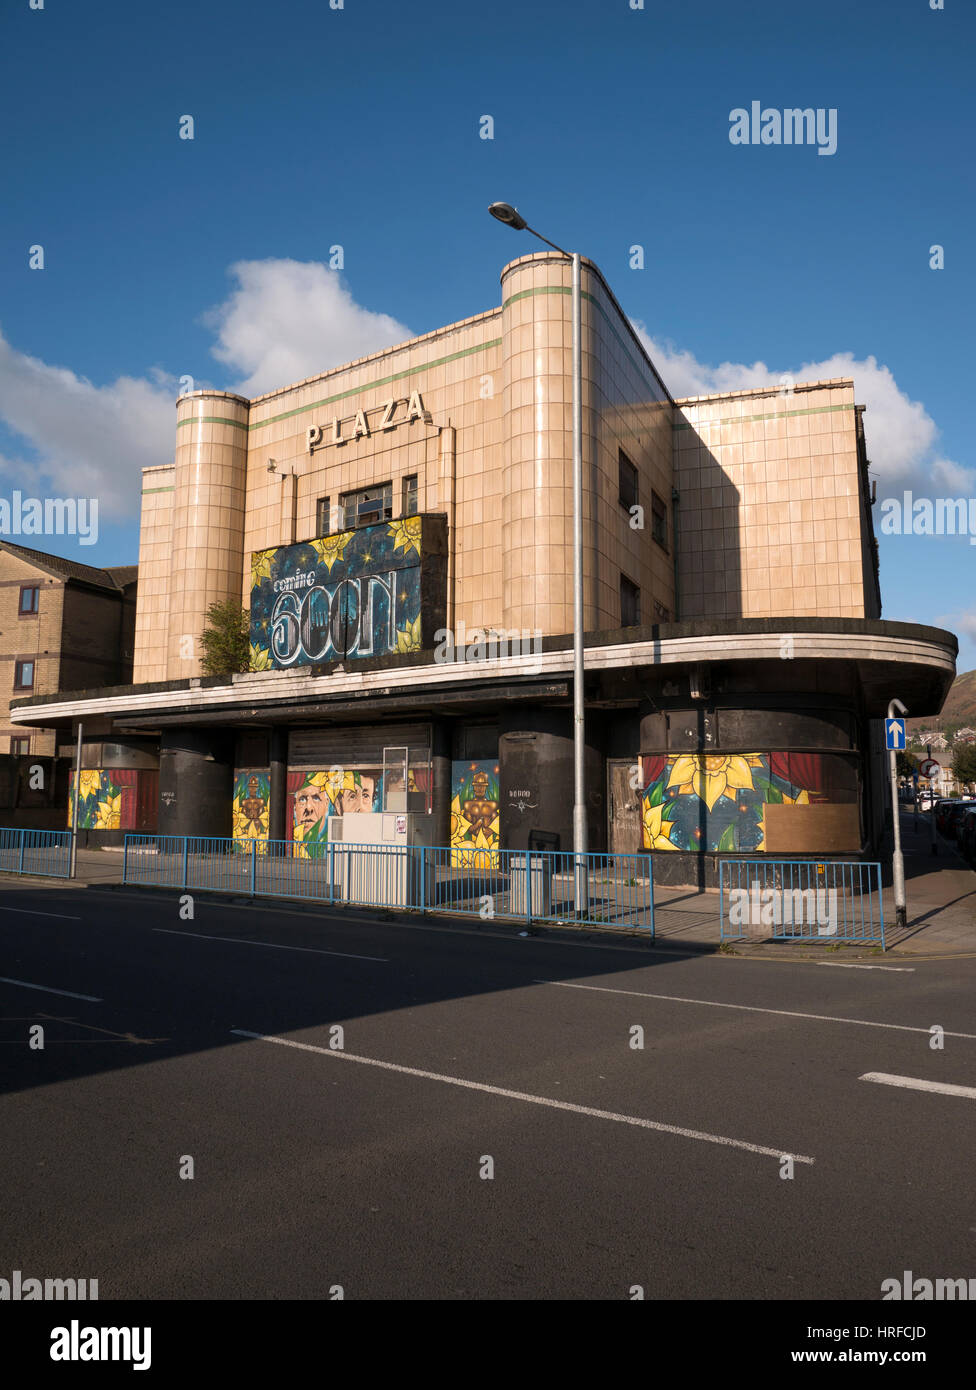 Port Talbot cinéma Plaza, de l'épave du bâtiment depuis 1999. Dispose d'un grand 'bientôt' signe West Glamorgan, Pays de Galles, Royaume-Uni. Banque D'Images